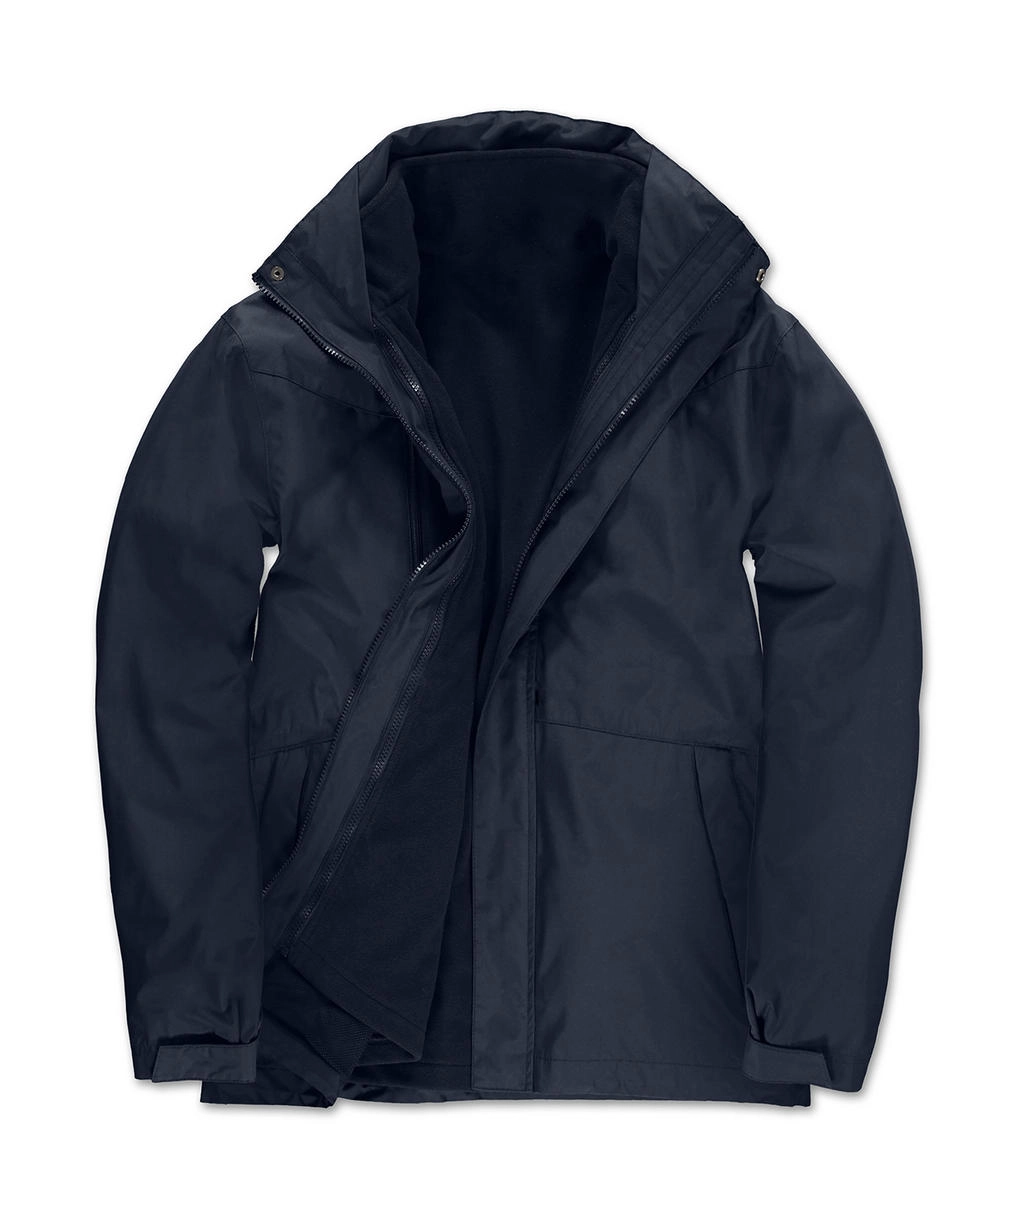 Corporate 3-in-1 Jacket zum Besticken und Bedrucken in der Farbe Navy mit Ihren Logo, Schriftzug oder Motiv.